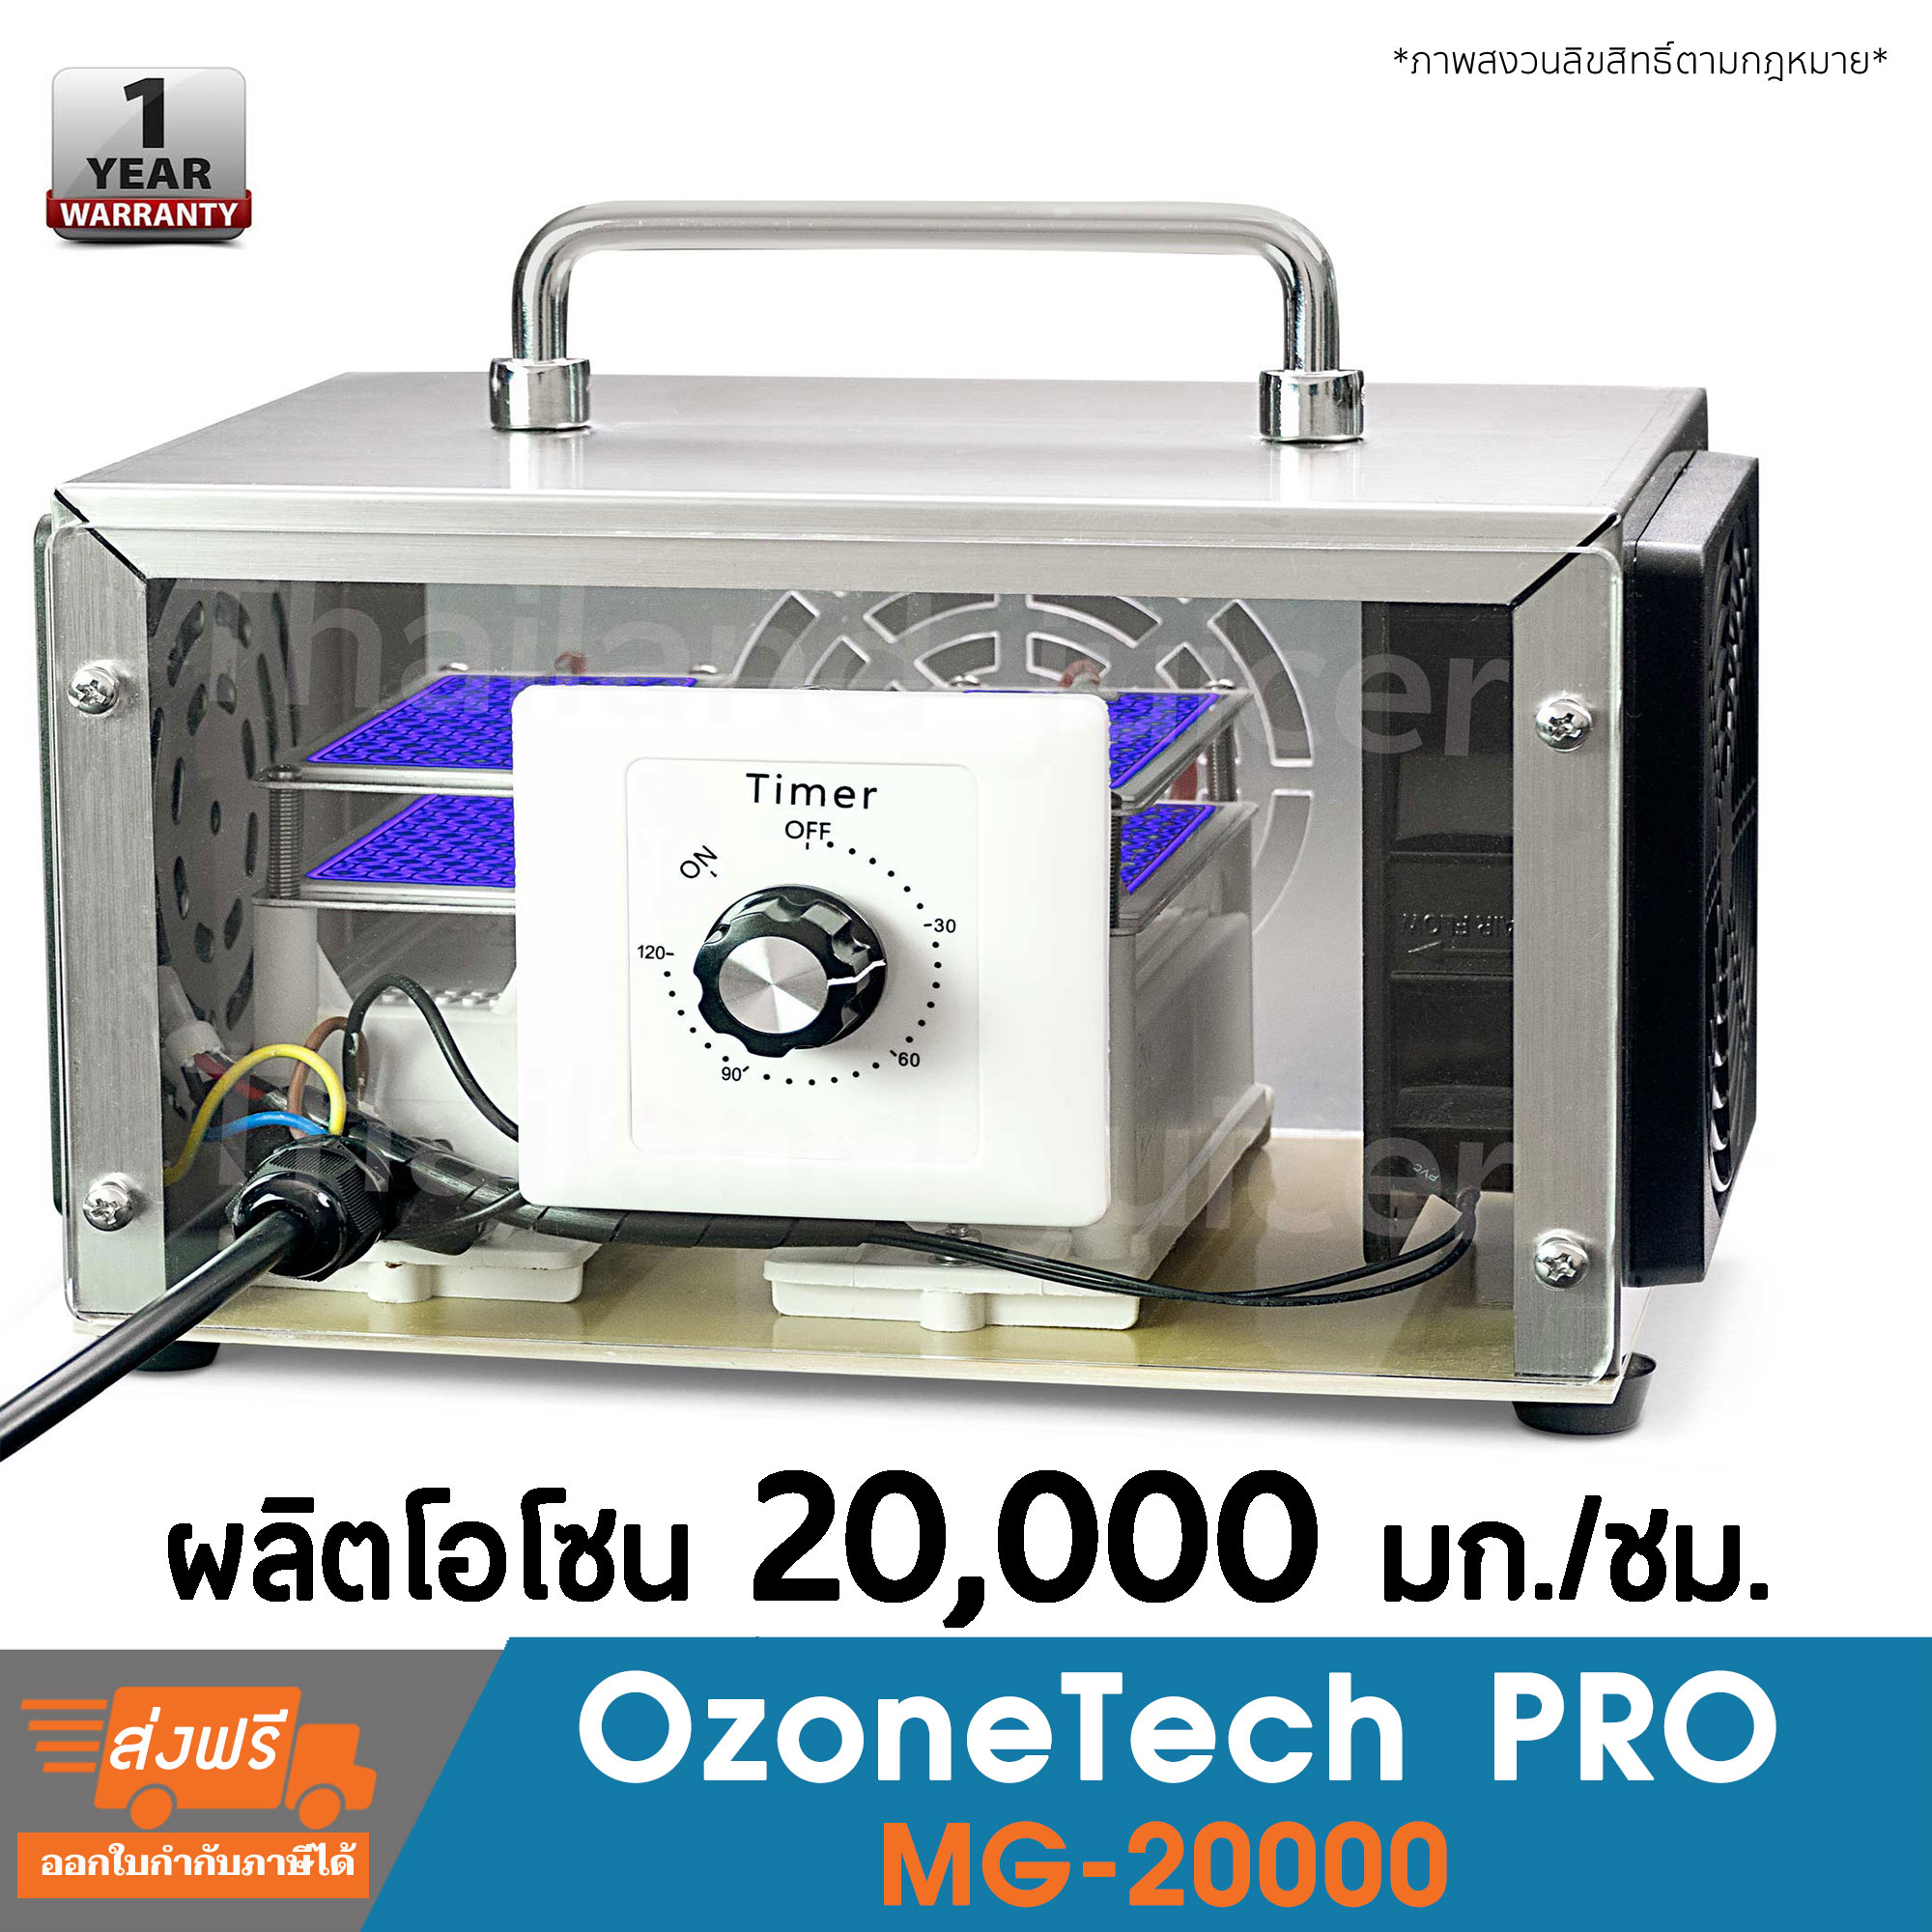 เครื่องอบโอโซน เชิงพาณิชย์ Ozonetech Pro MG-20000 เครื่องผลิตโอโซน มีประกัน